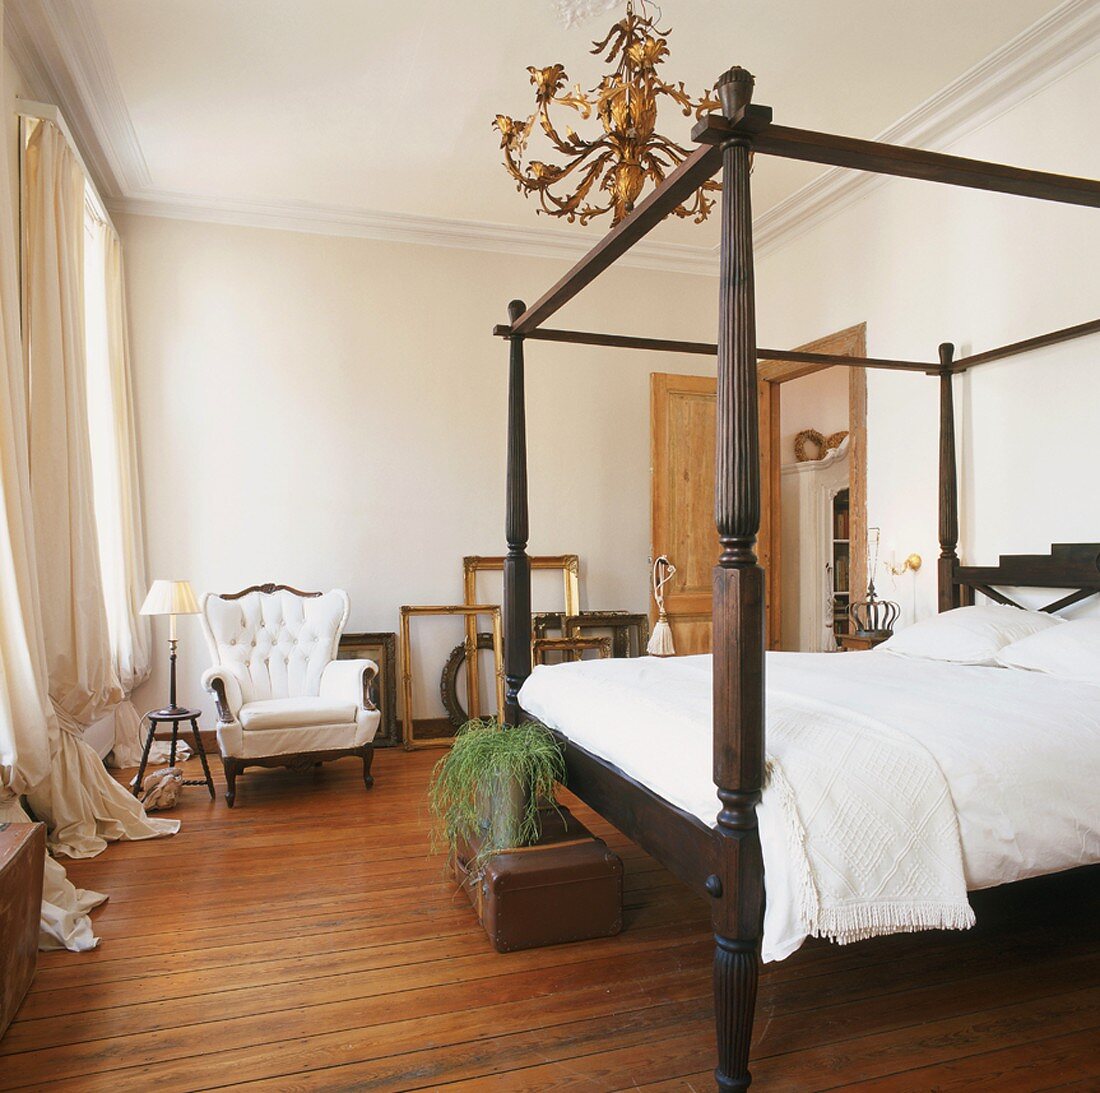 Ein herrschaftliches Himmelbett aus der Gründerzeit bildet den Mittelpunkt des antik eingerichteten Schlafzimmers